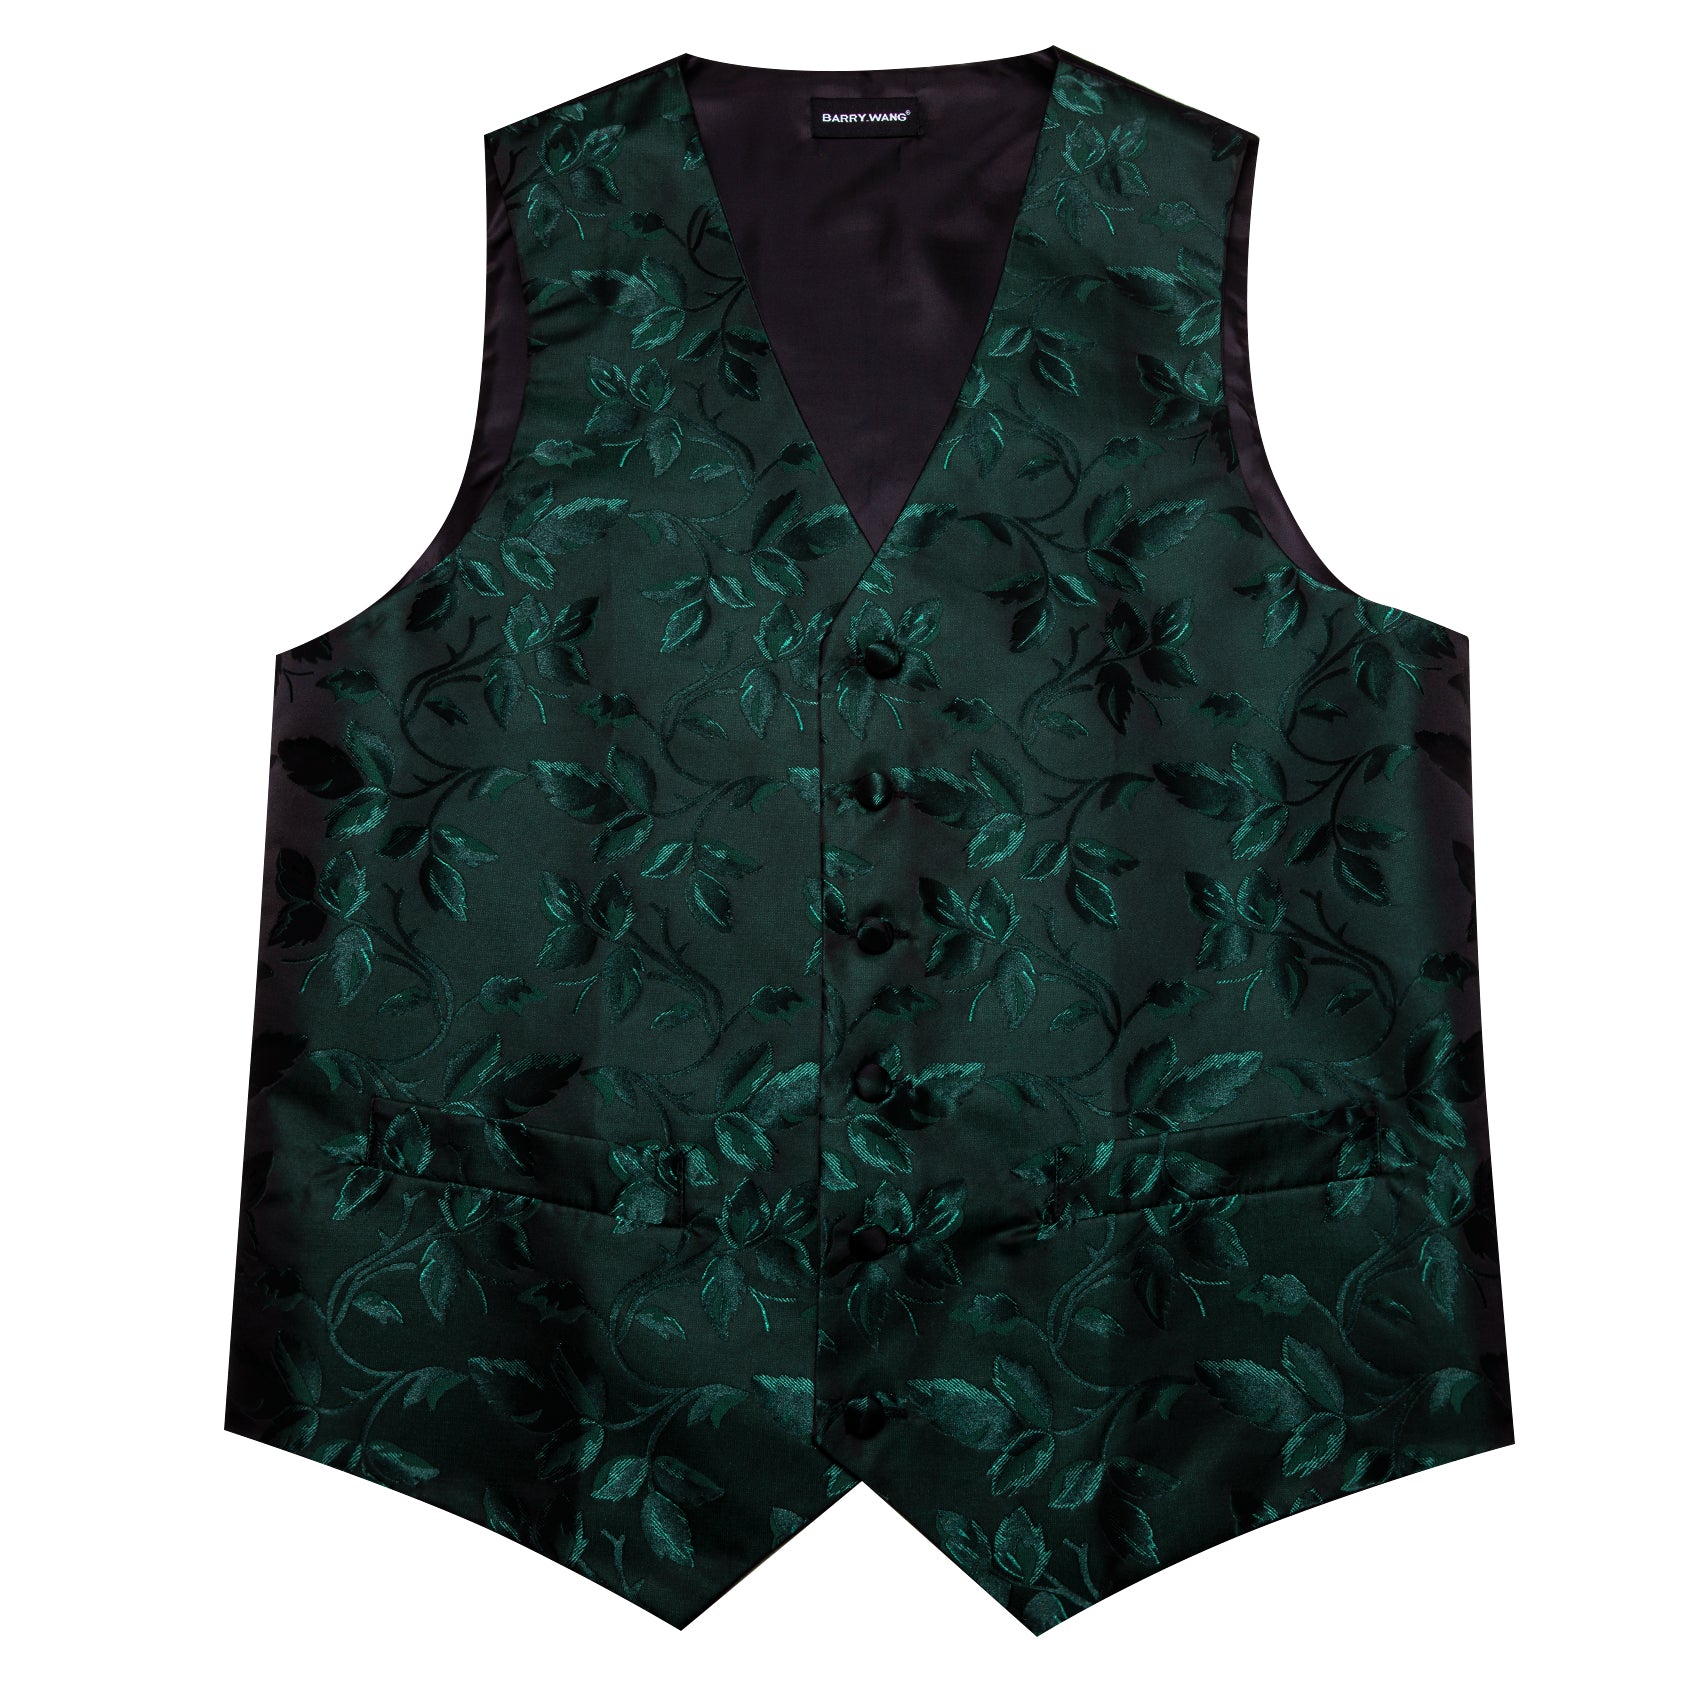 Men's Dark Green Floral Silk Tie Waistcoat Vest Hanky Cufflinks Set